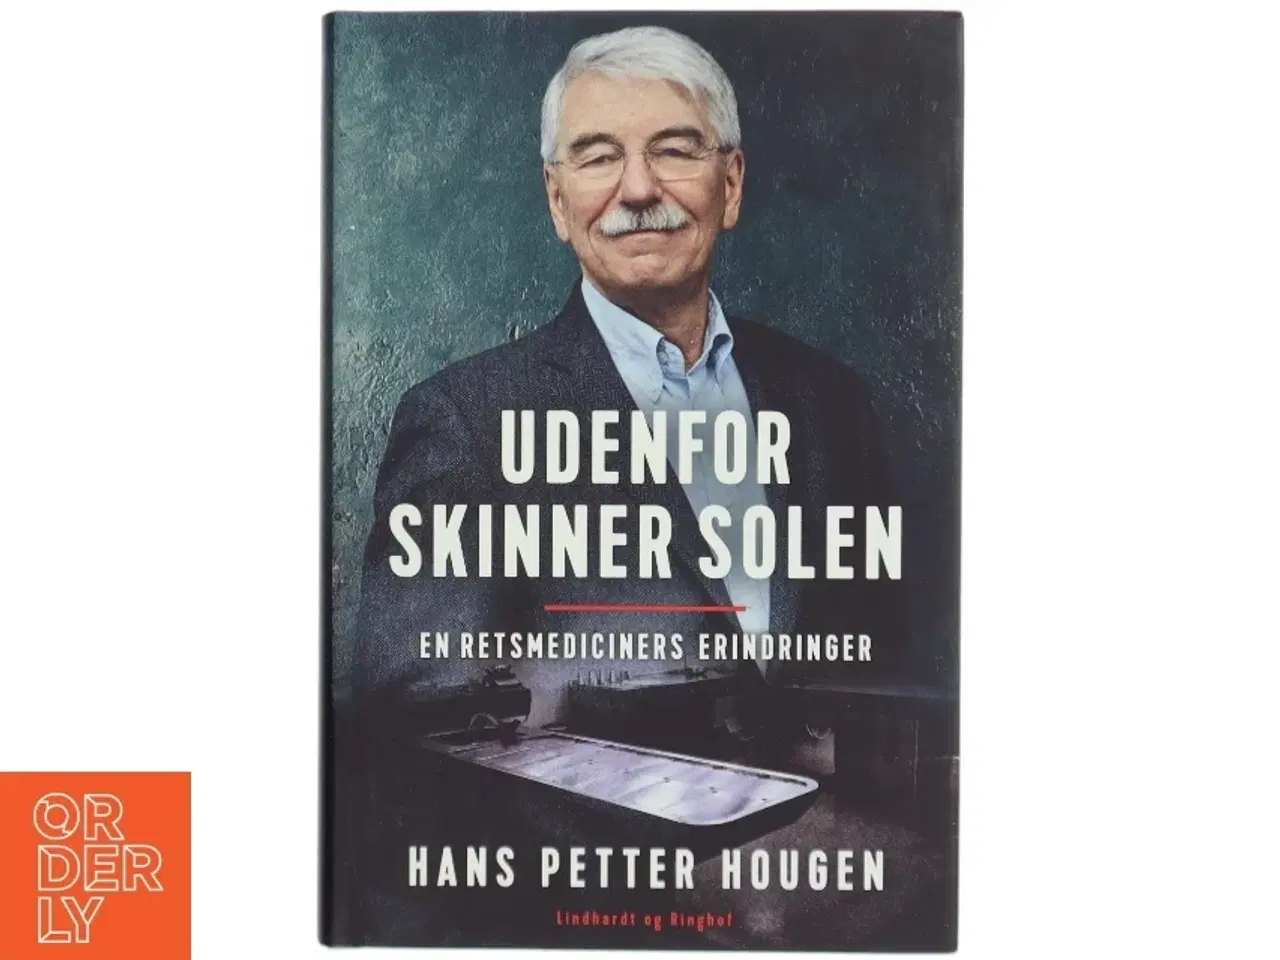 Billede 1 - 'Udenfor skinner solen: en retsmediciners erindringer' af Hans Petter Hougen (bog)